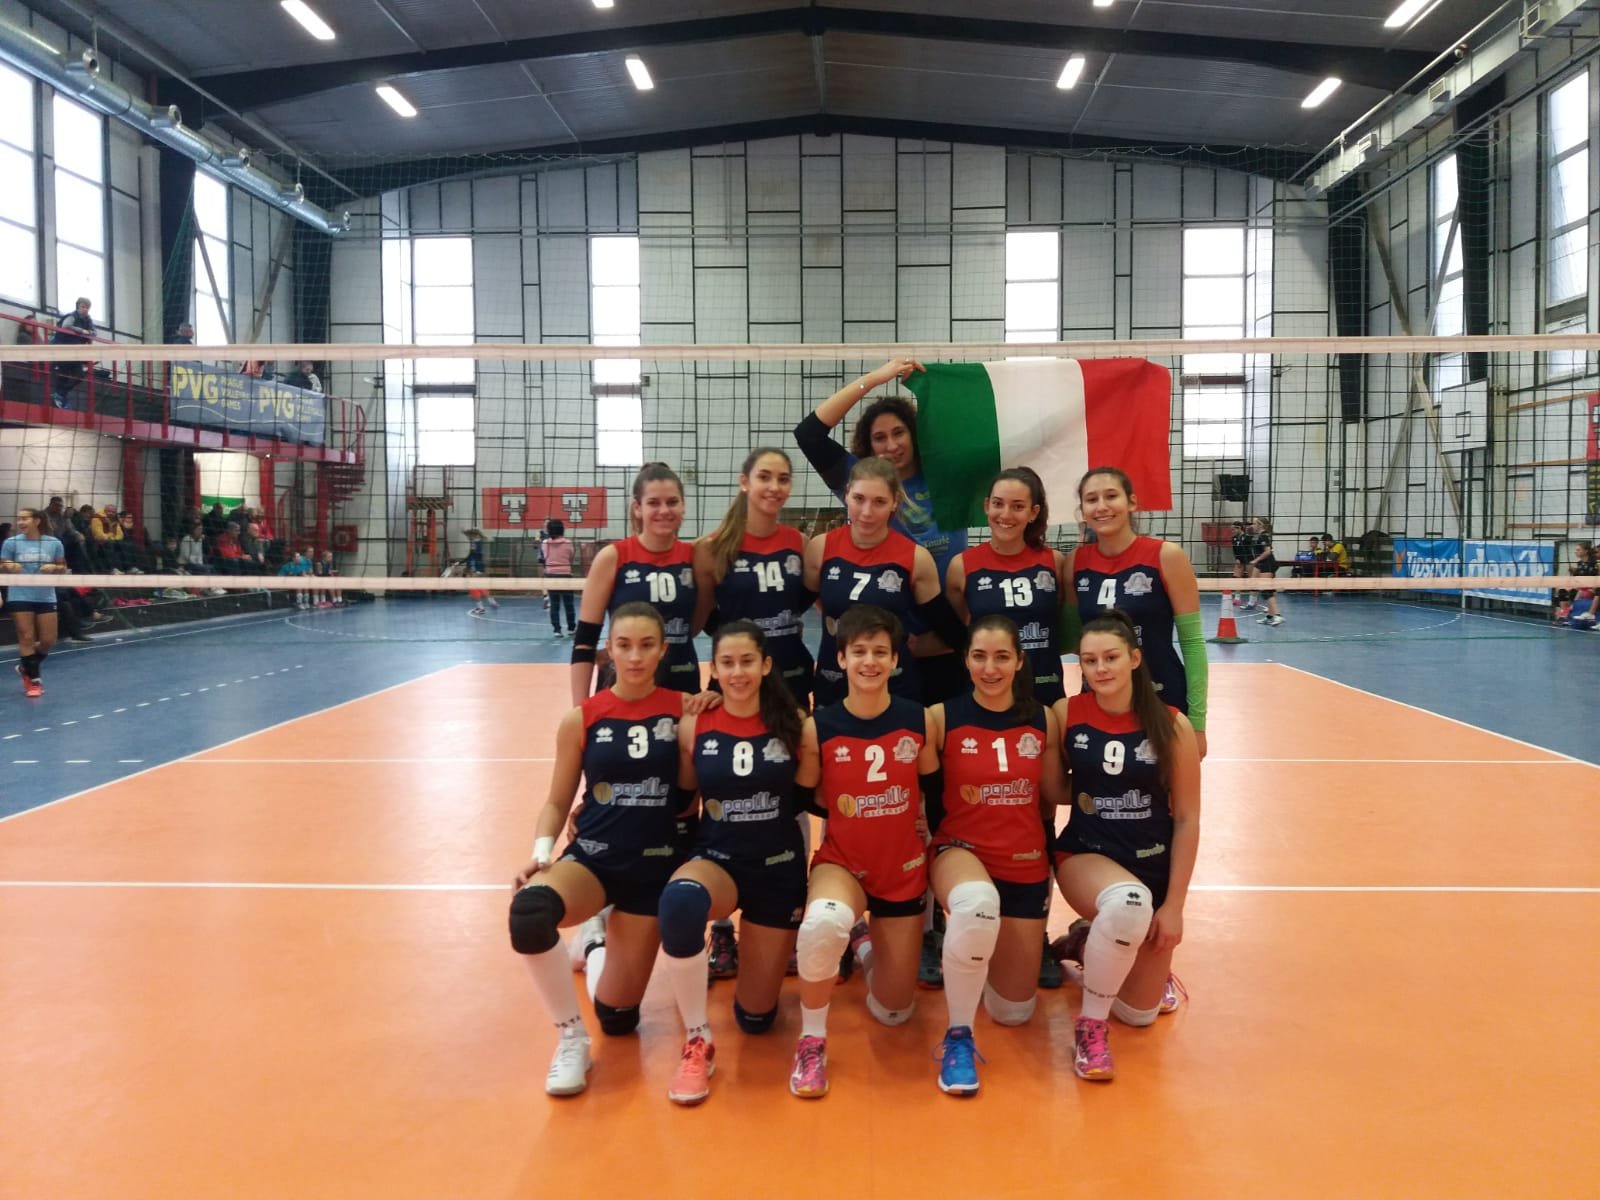 Alessandria Volley: a Praga Under 16 e 19 subito vincenti